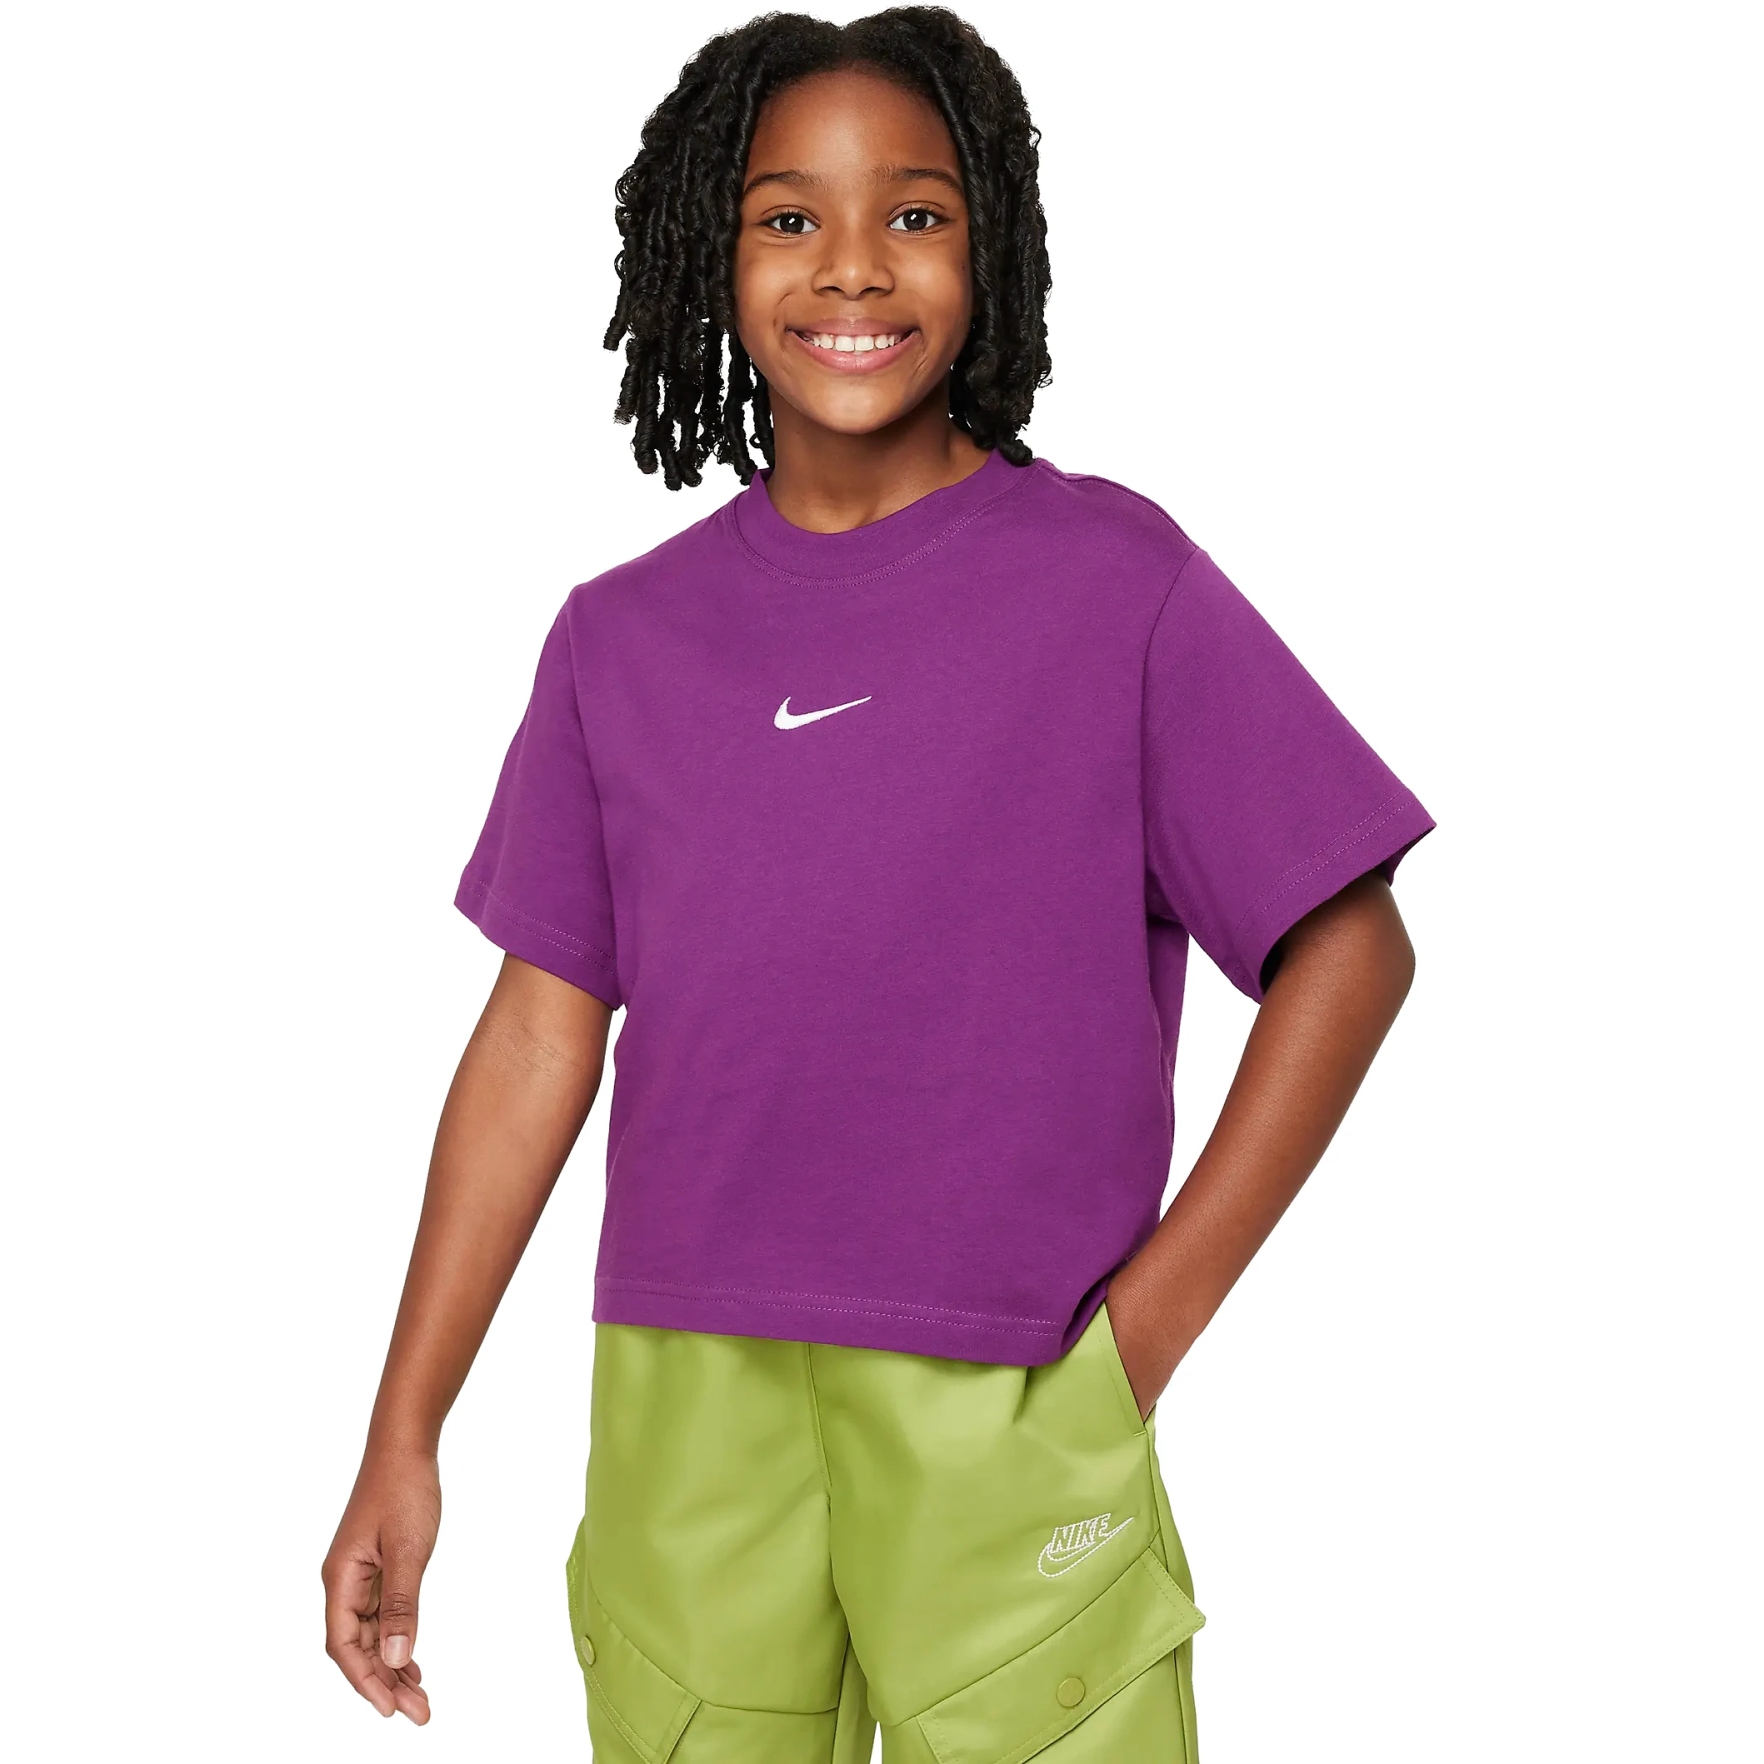 Produktbild von Nike Sportswear T-Shirt für ältere Kinder - viotech/white DH5750-503